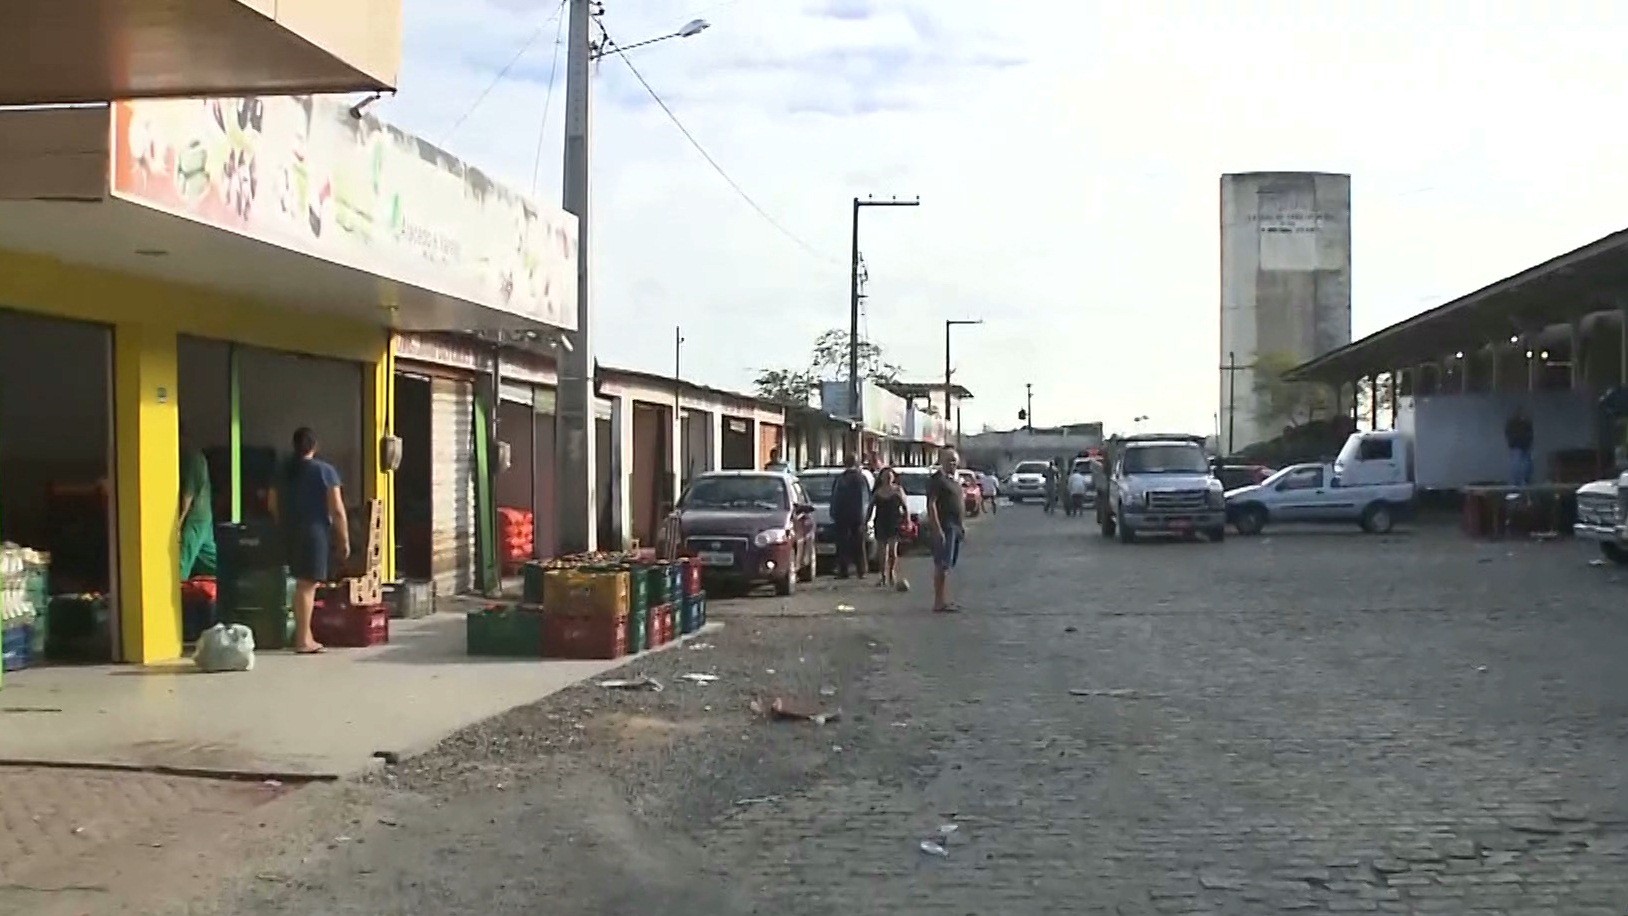 Homens armados rendem vigilante e assaltam cooperativa de crédito, em Campina Grande 